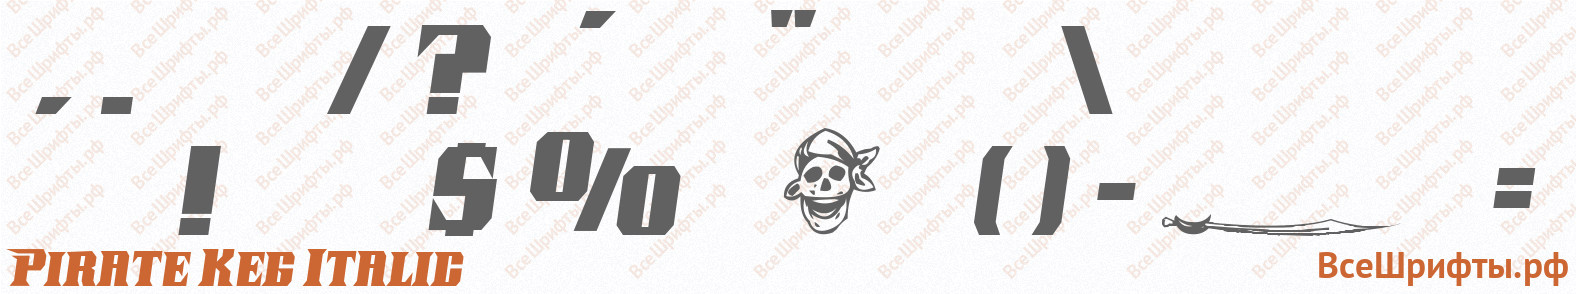 Шрифт Pirate Keg Italic со знаками препинания и пунктуации